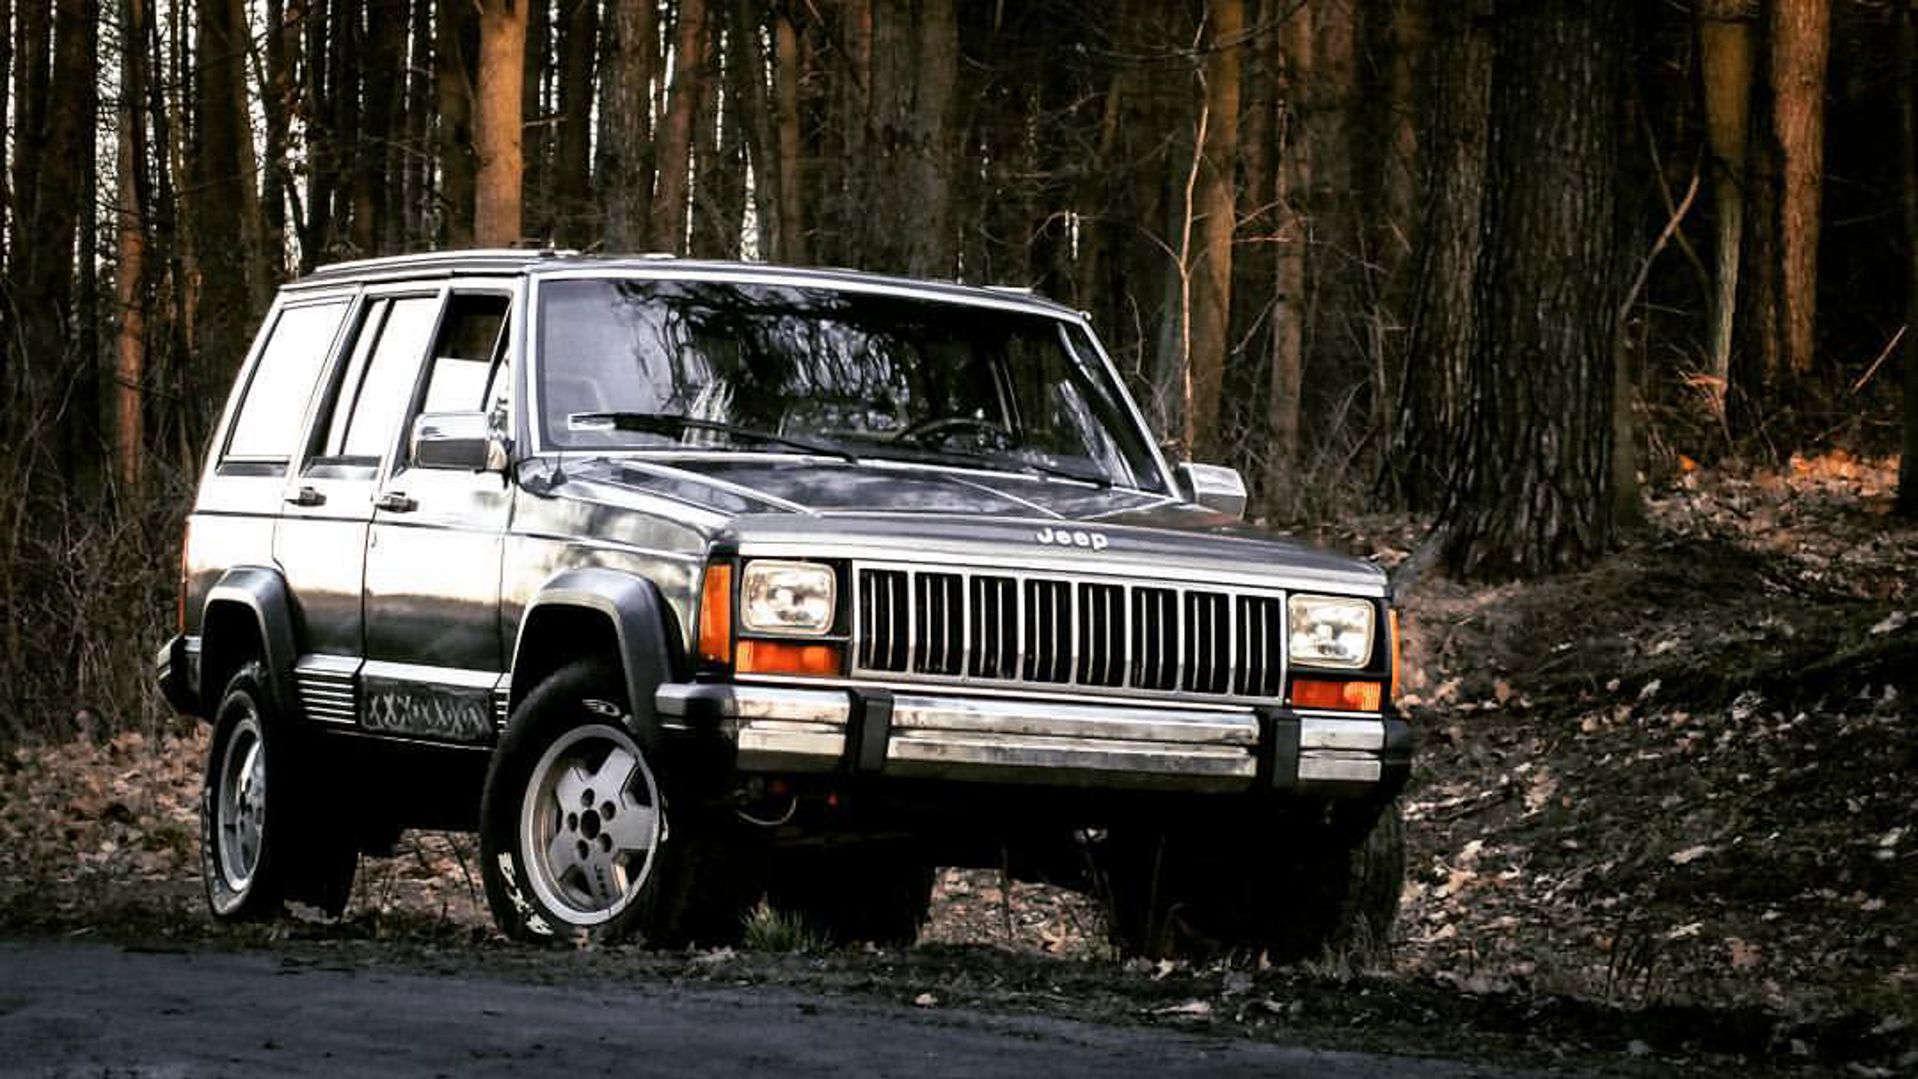 1989 Jeep Cherokee Xj 4.0 Laredo 2Wd - Produkt Niepełnowartościowy? | Autokult.pl